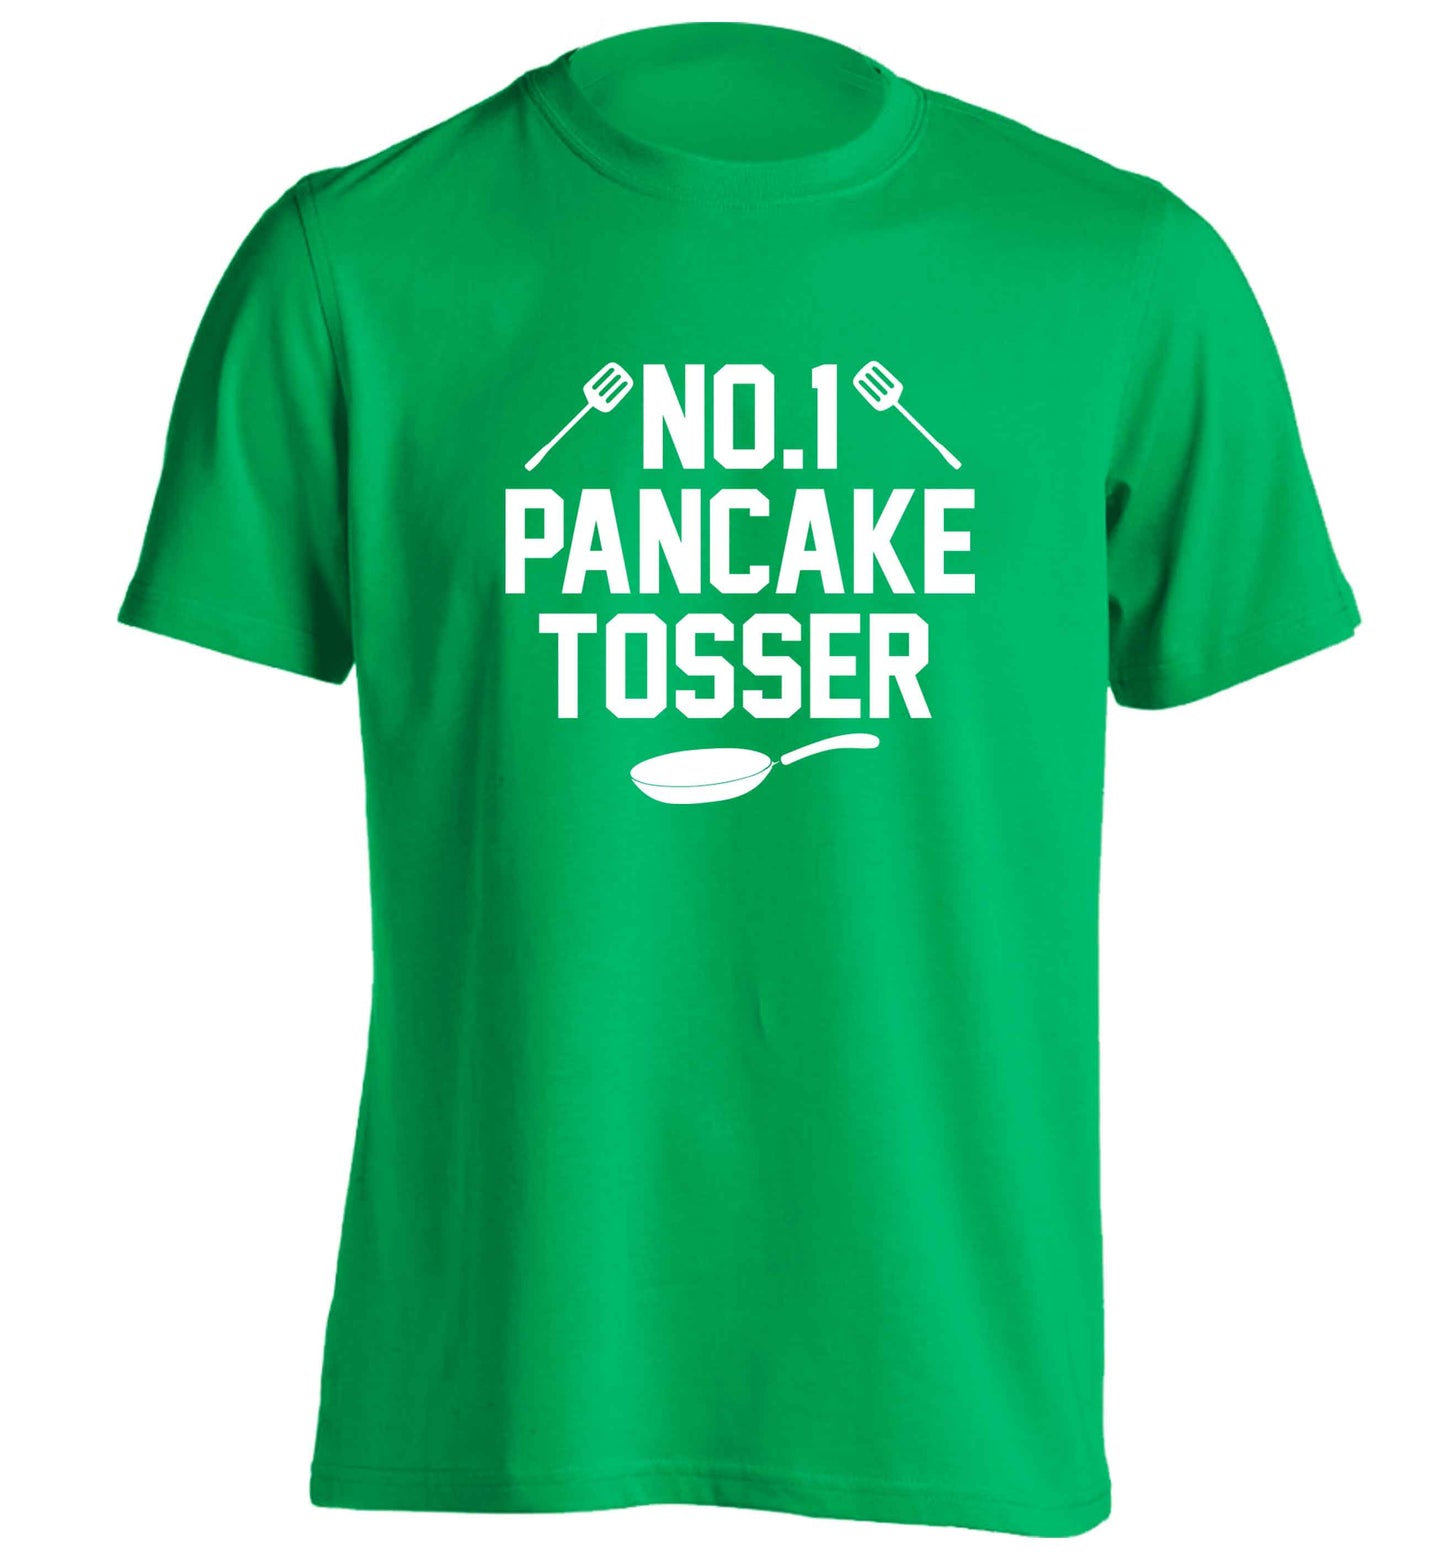 No.1 Pancake tosser adults unisex green Tshirt 2XL